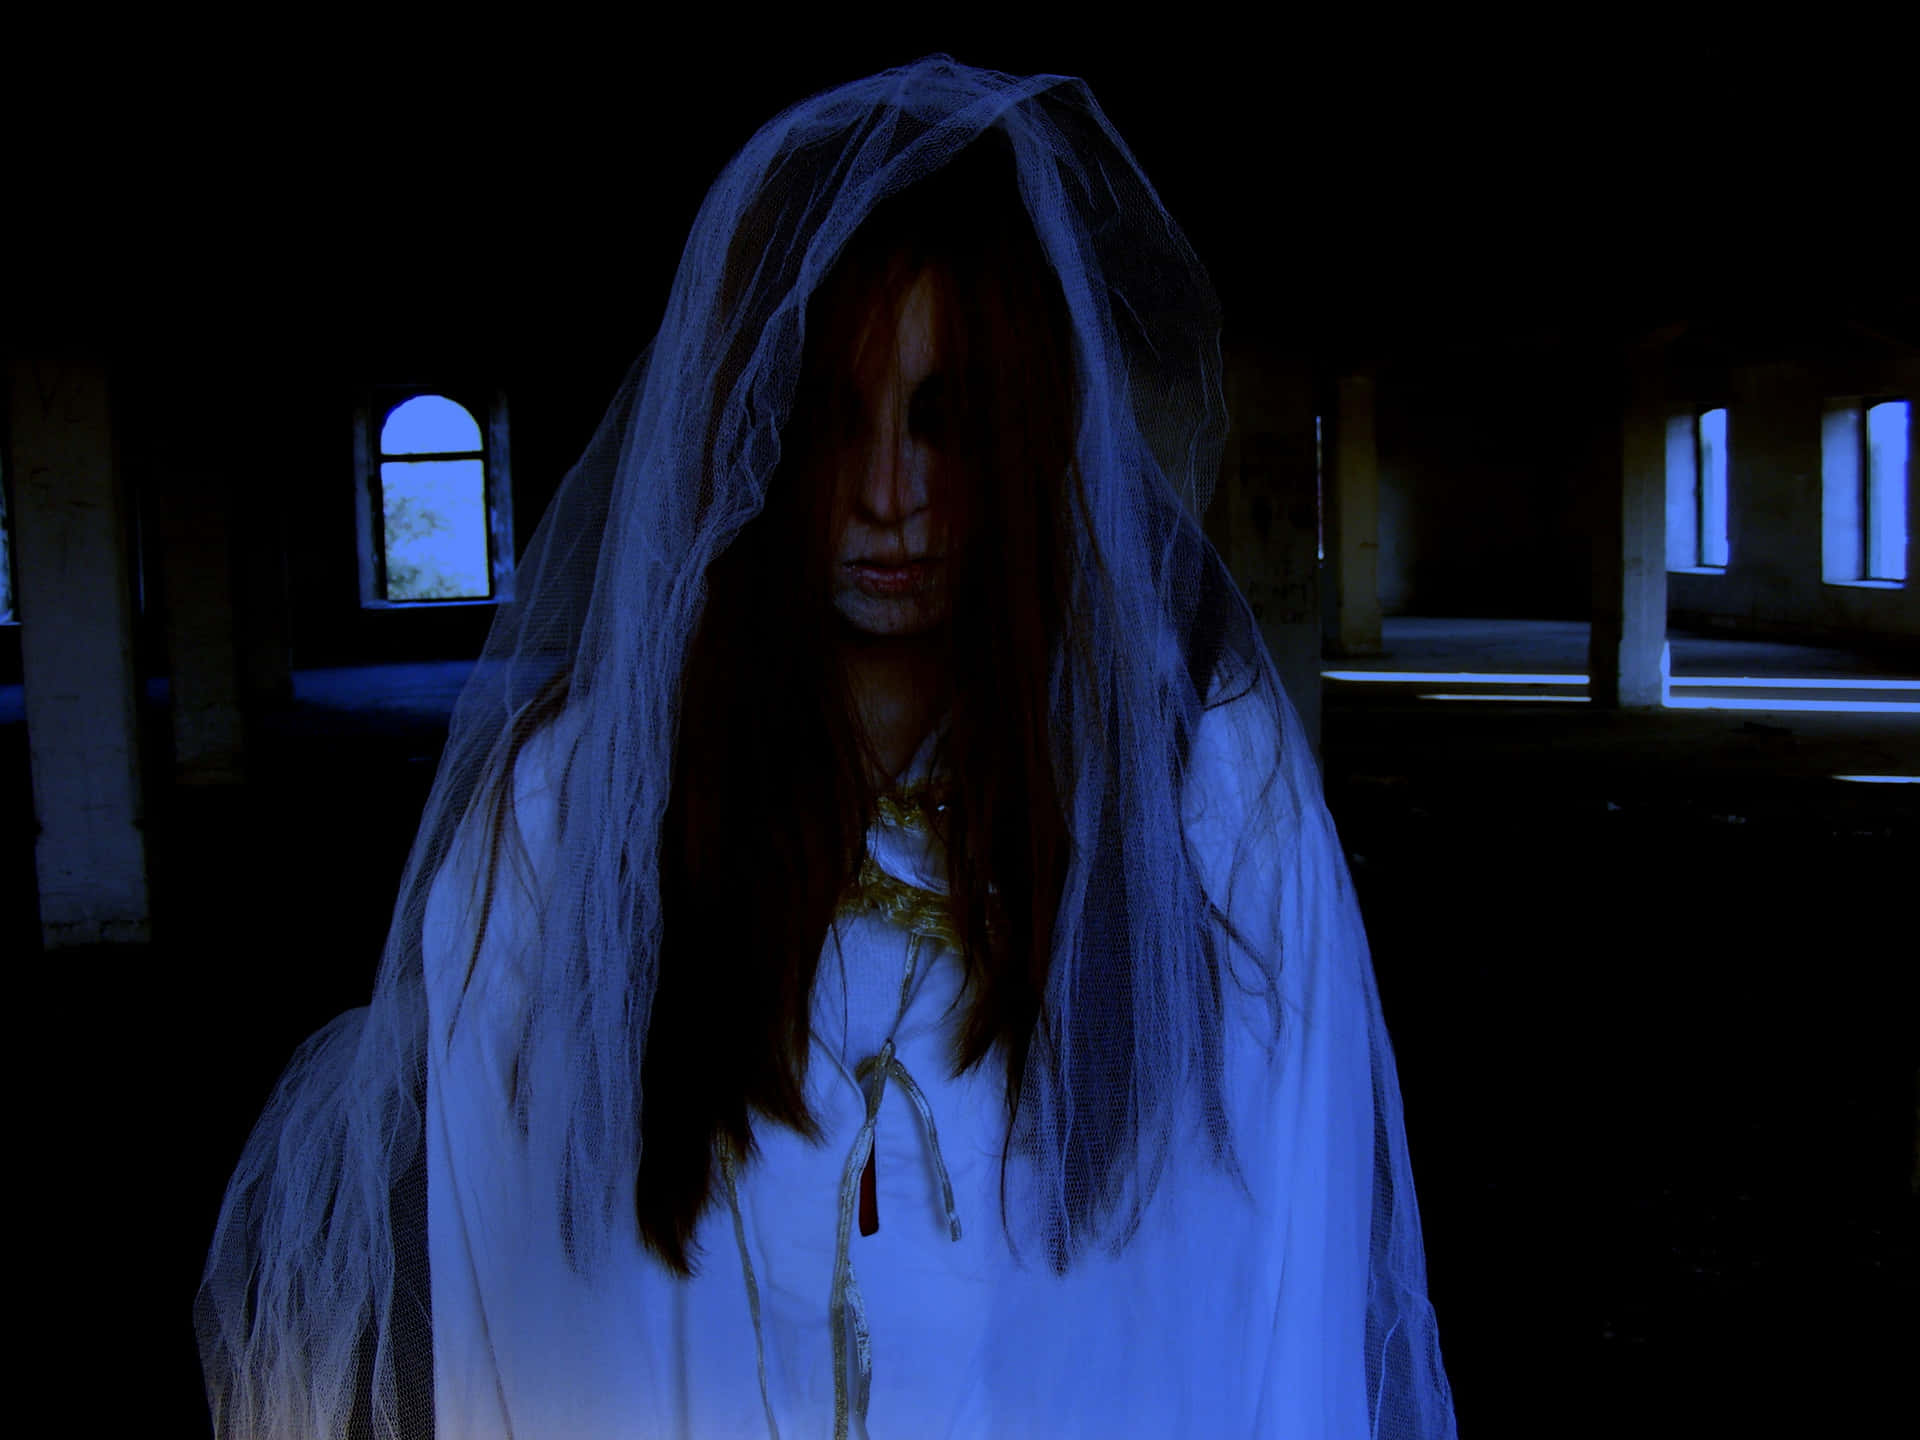 Imagende Una Casa Embrujada Por Fantasmas Y La Dama Blanca.